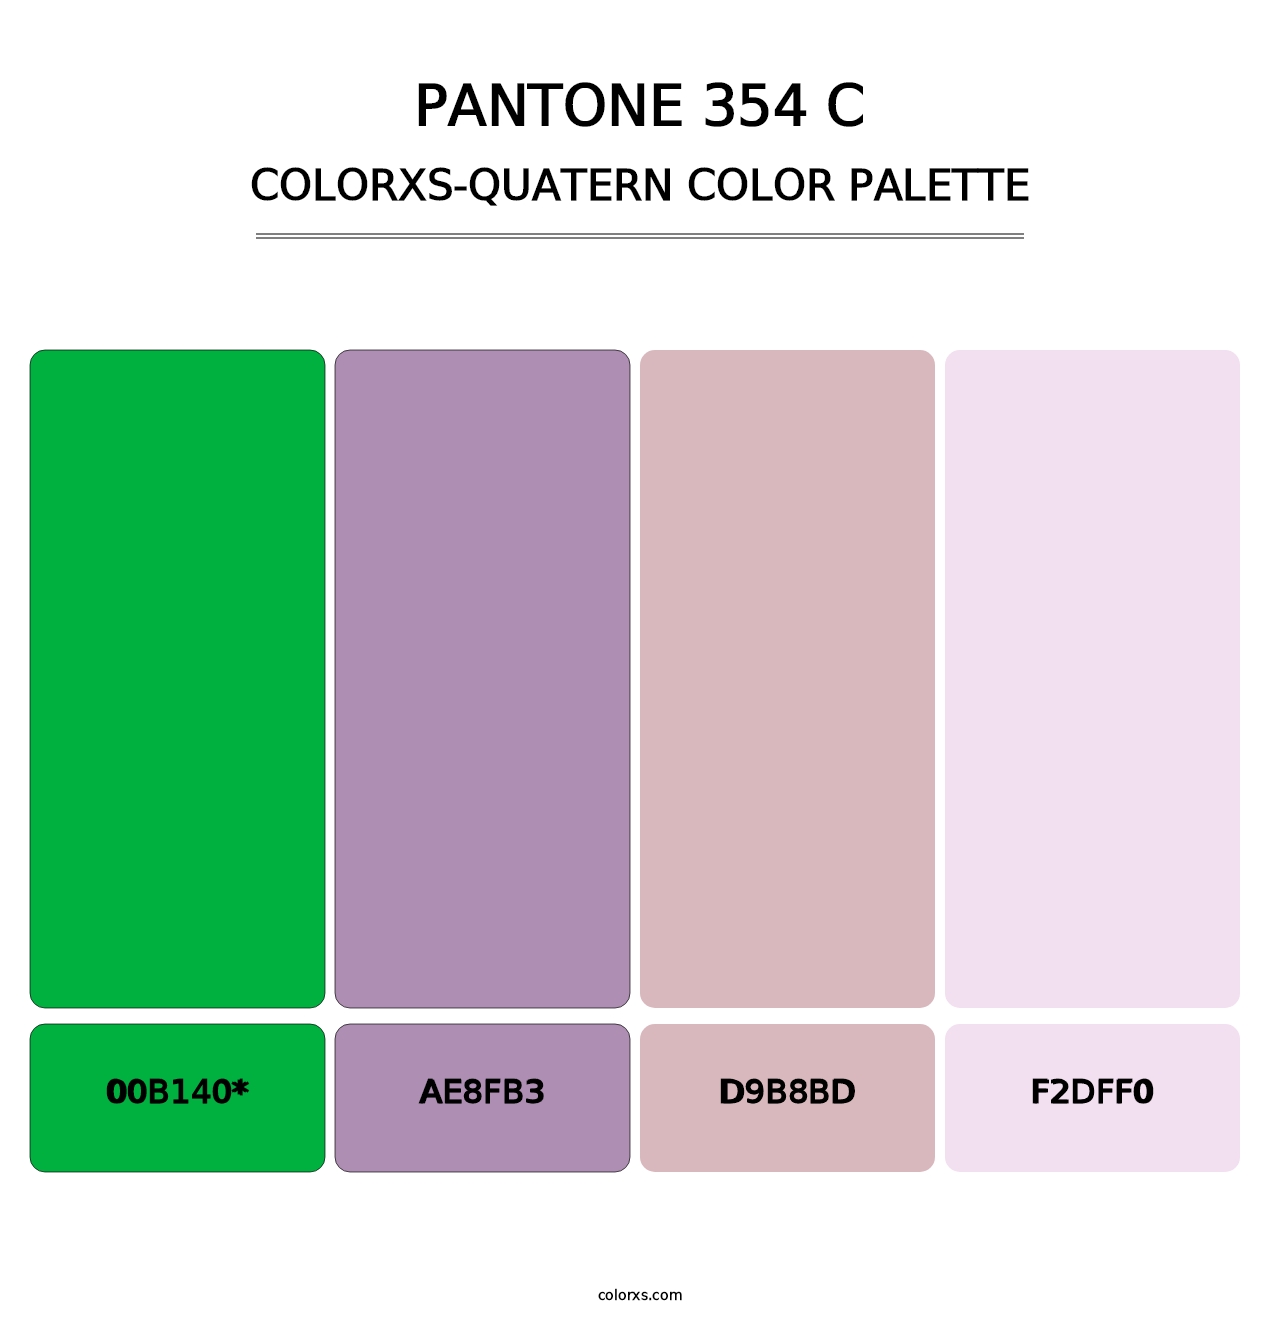 PANTONE 354 C - Colorxs Quad Palette